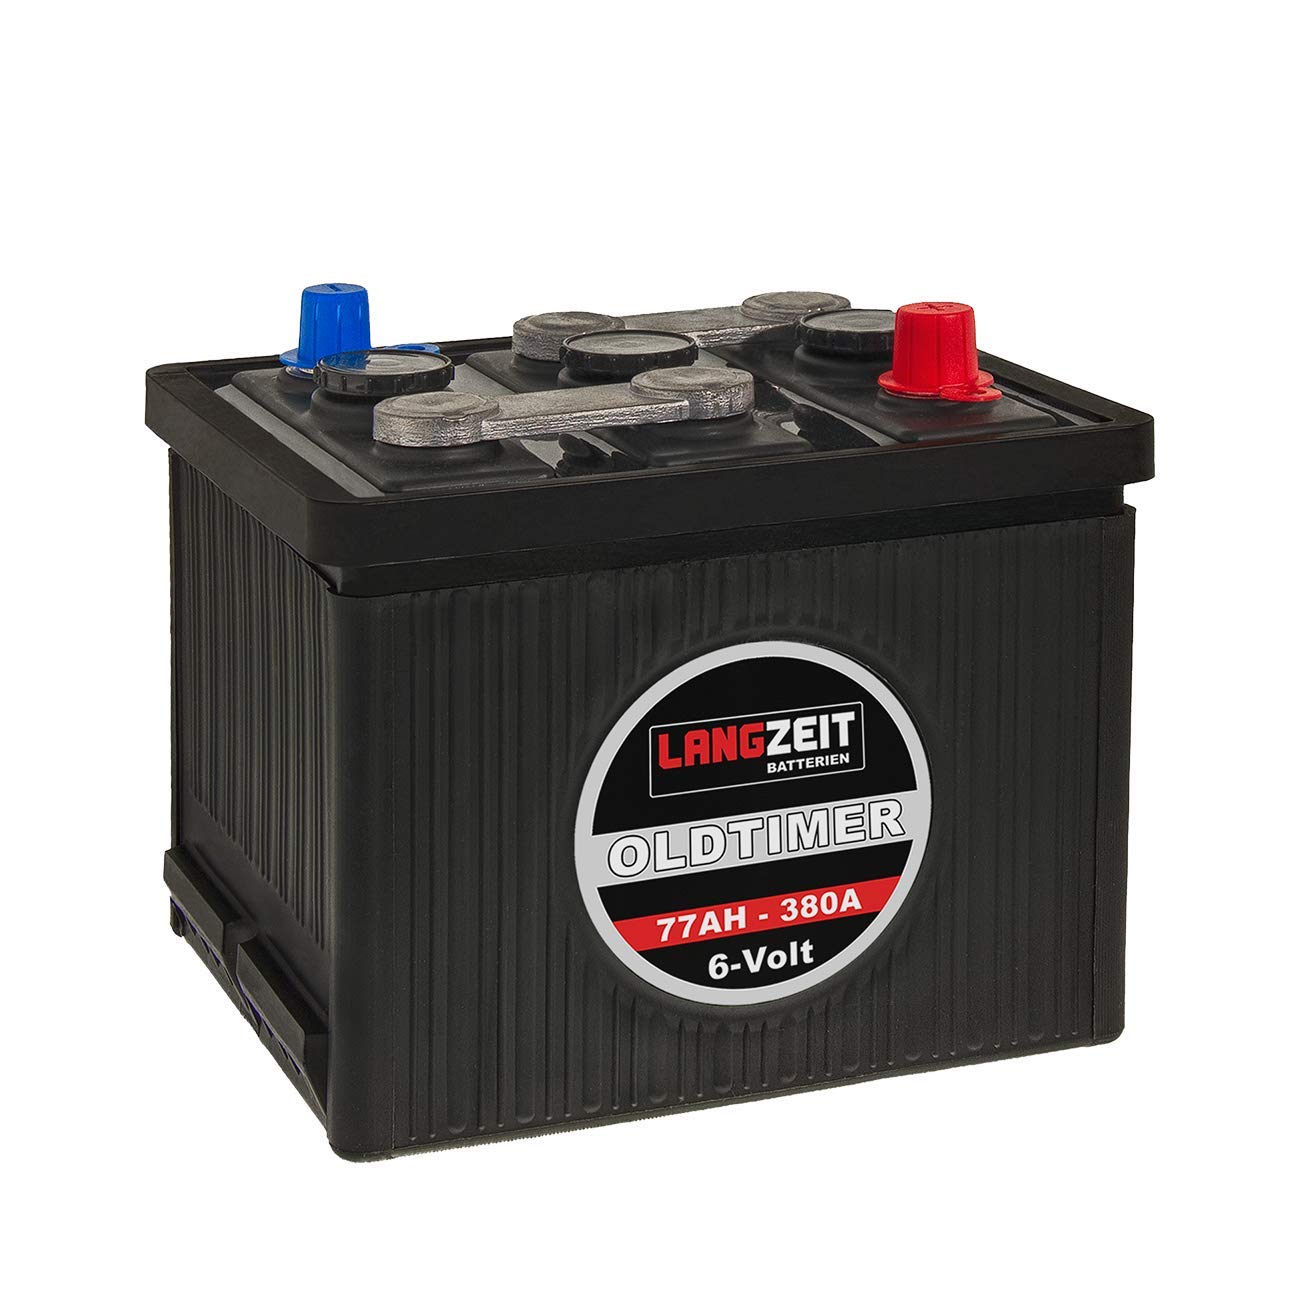 LANGZEIT Autobatterie 6V 77Ah Starterbatterie Oldtimer Batterie 6 Volt 07715 von LANGZEIT Batterien